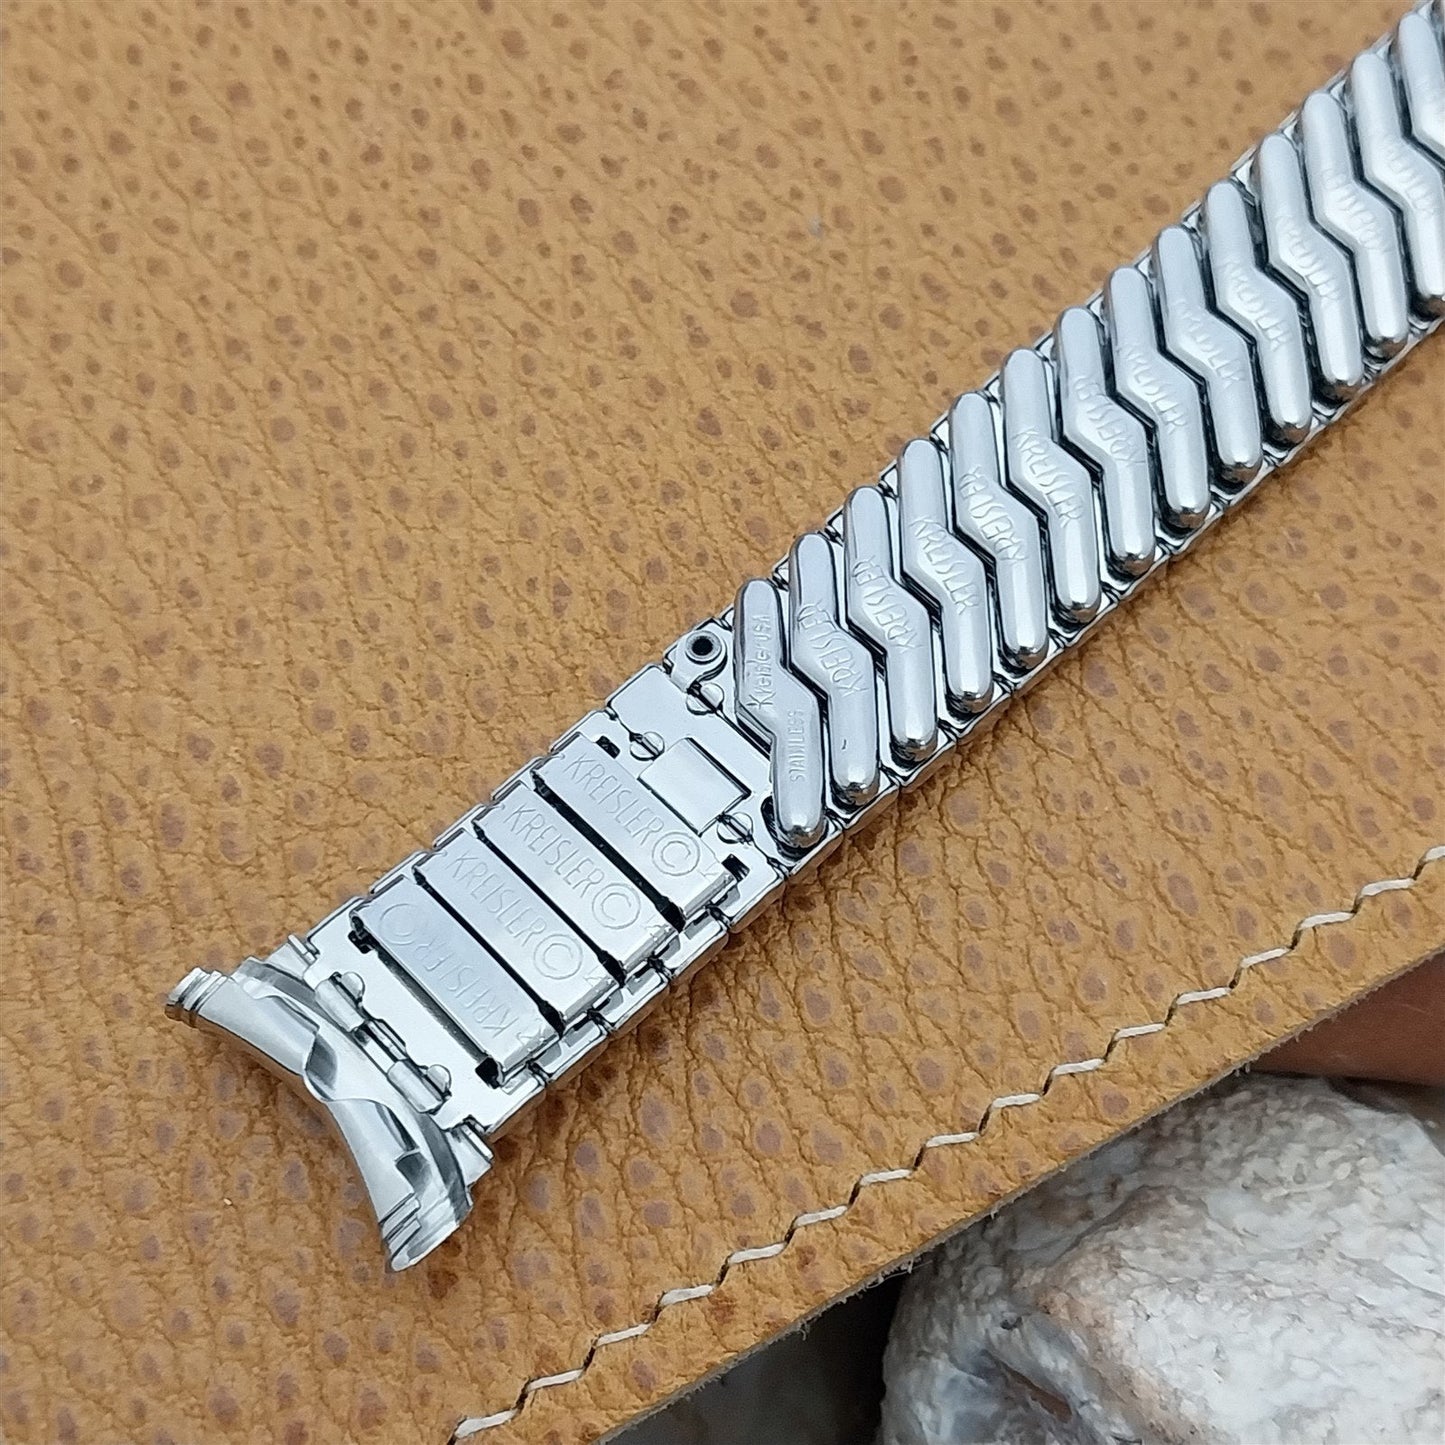 19mm 18mm 16mm Kreisler Stainless Steel Classic Unused 1960s Vintage Watch Band